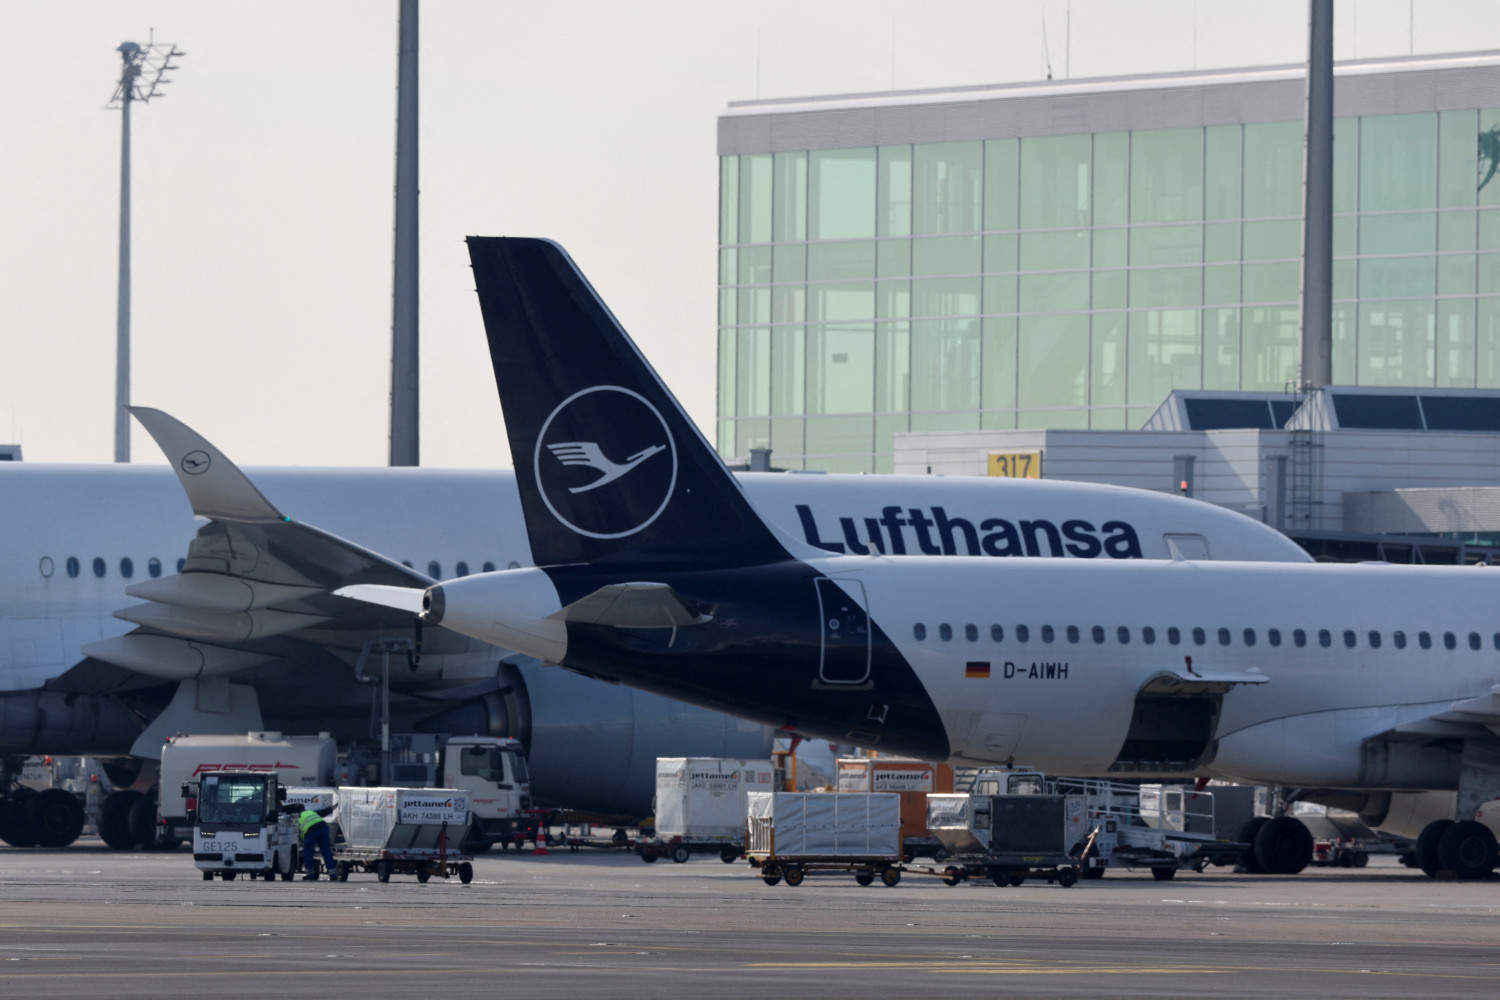 des avions de la compagnie lufthansa sont vus sur le tarmac de l aeroport international de munich 